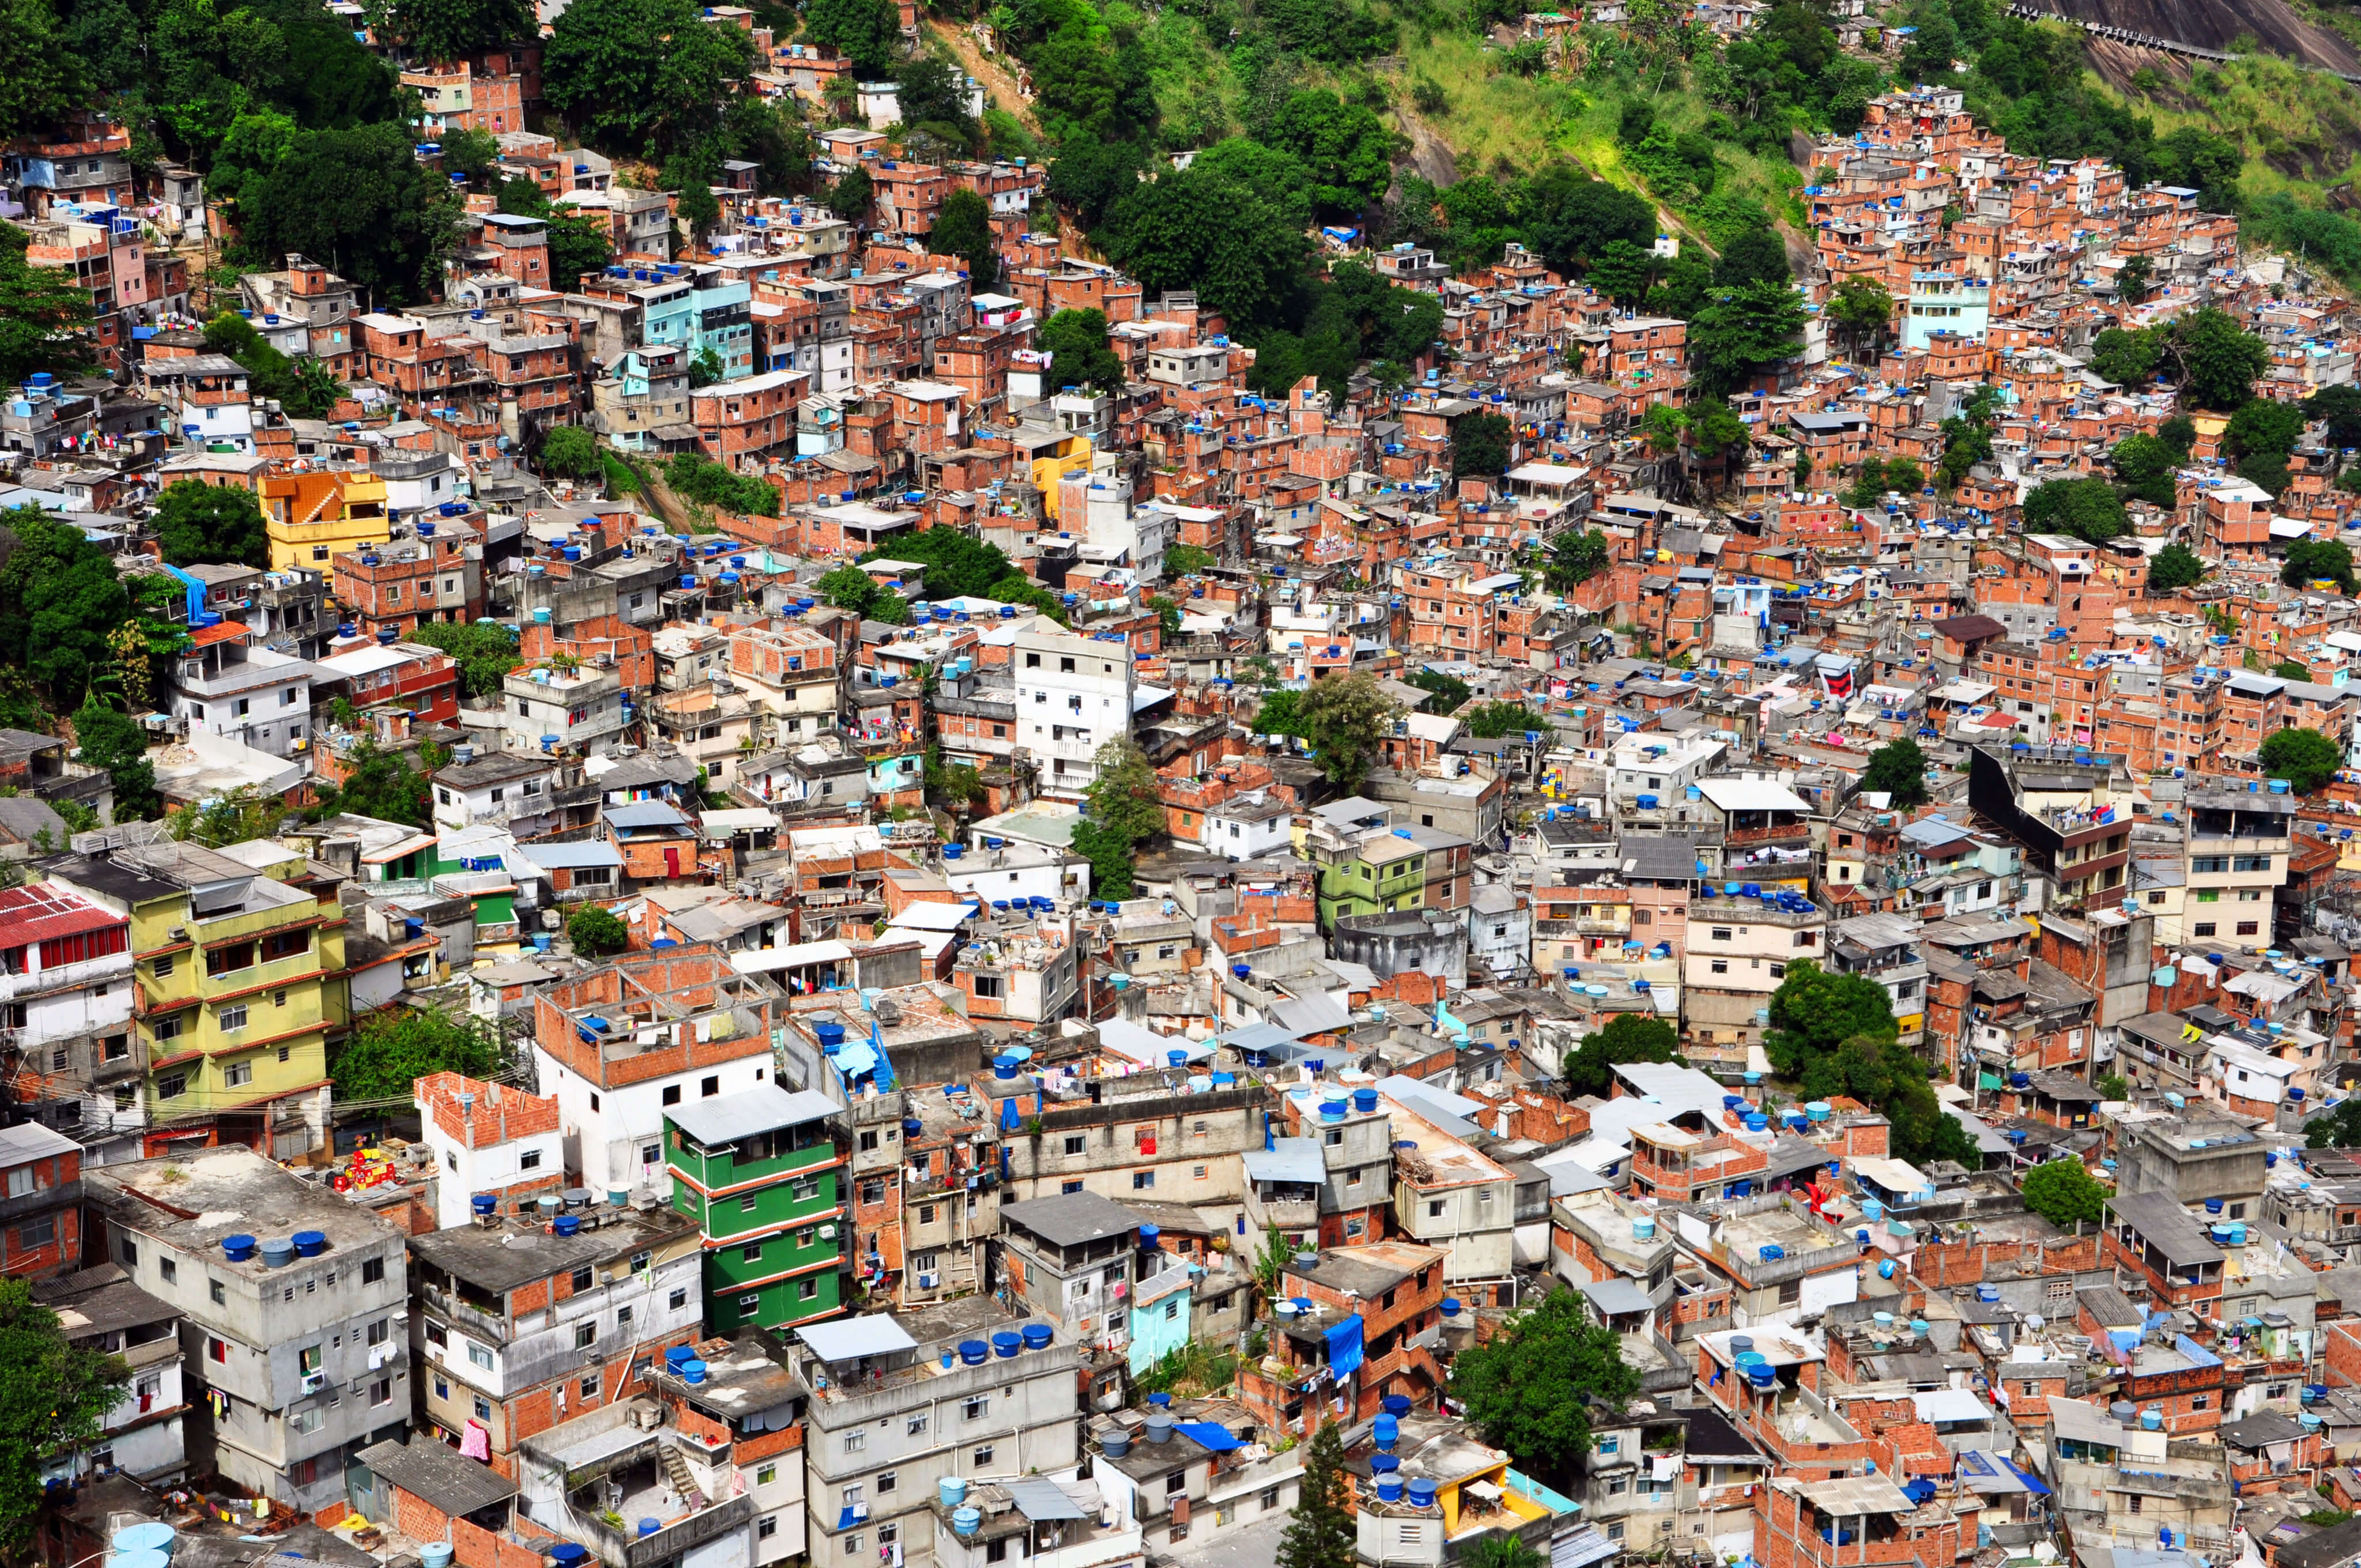 Rocinha is a favela in Rio